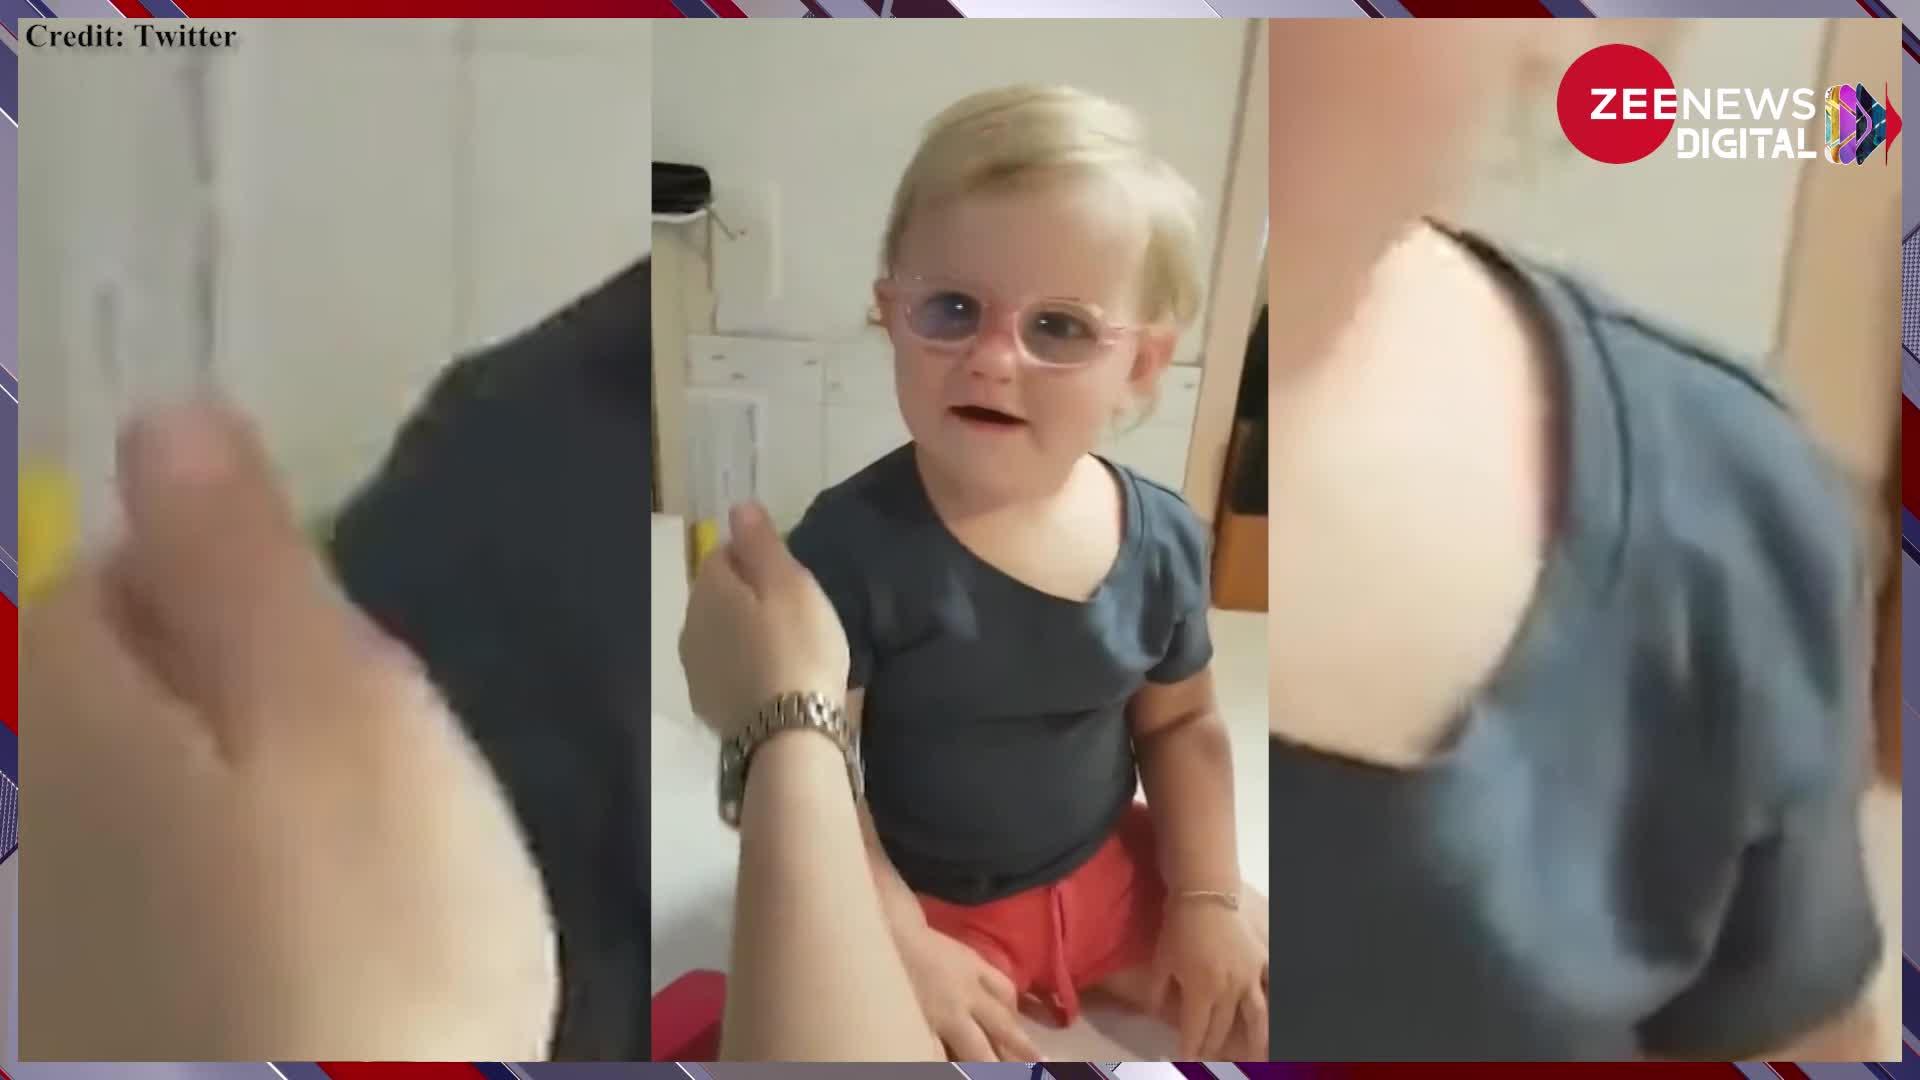 Child Video: पहले चश्मा पहनने से किया इनकार, फिर चश्मा लगाते ही चमक उठी आंखे, देखें छोटी बच्ची का क्यूट रिएक्शन